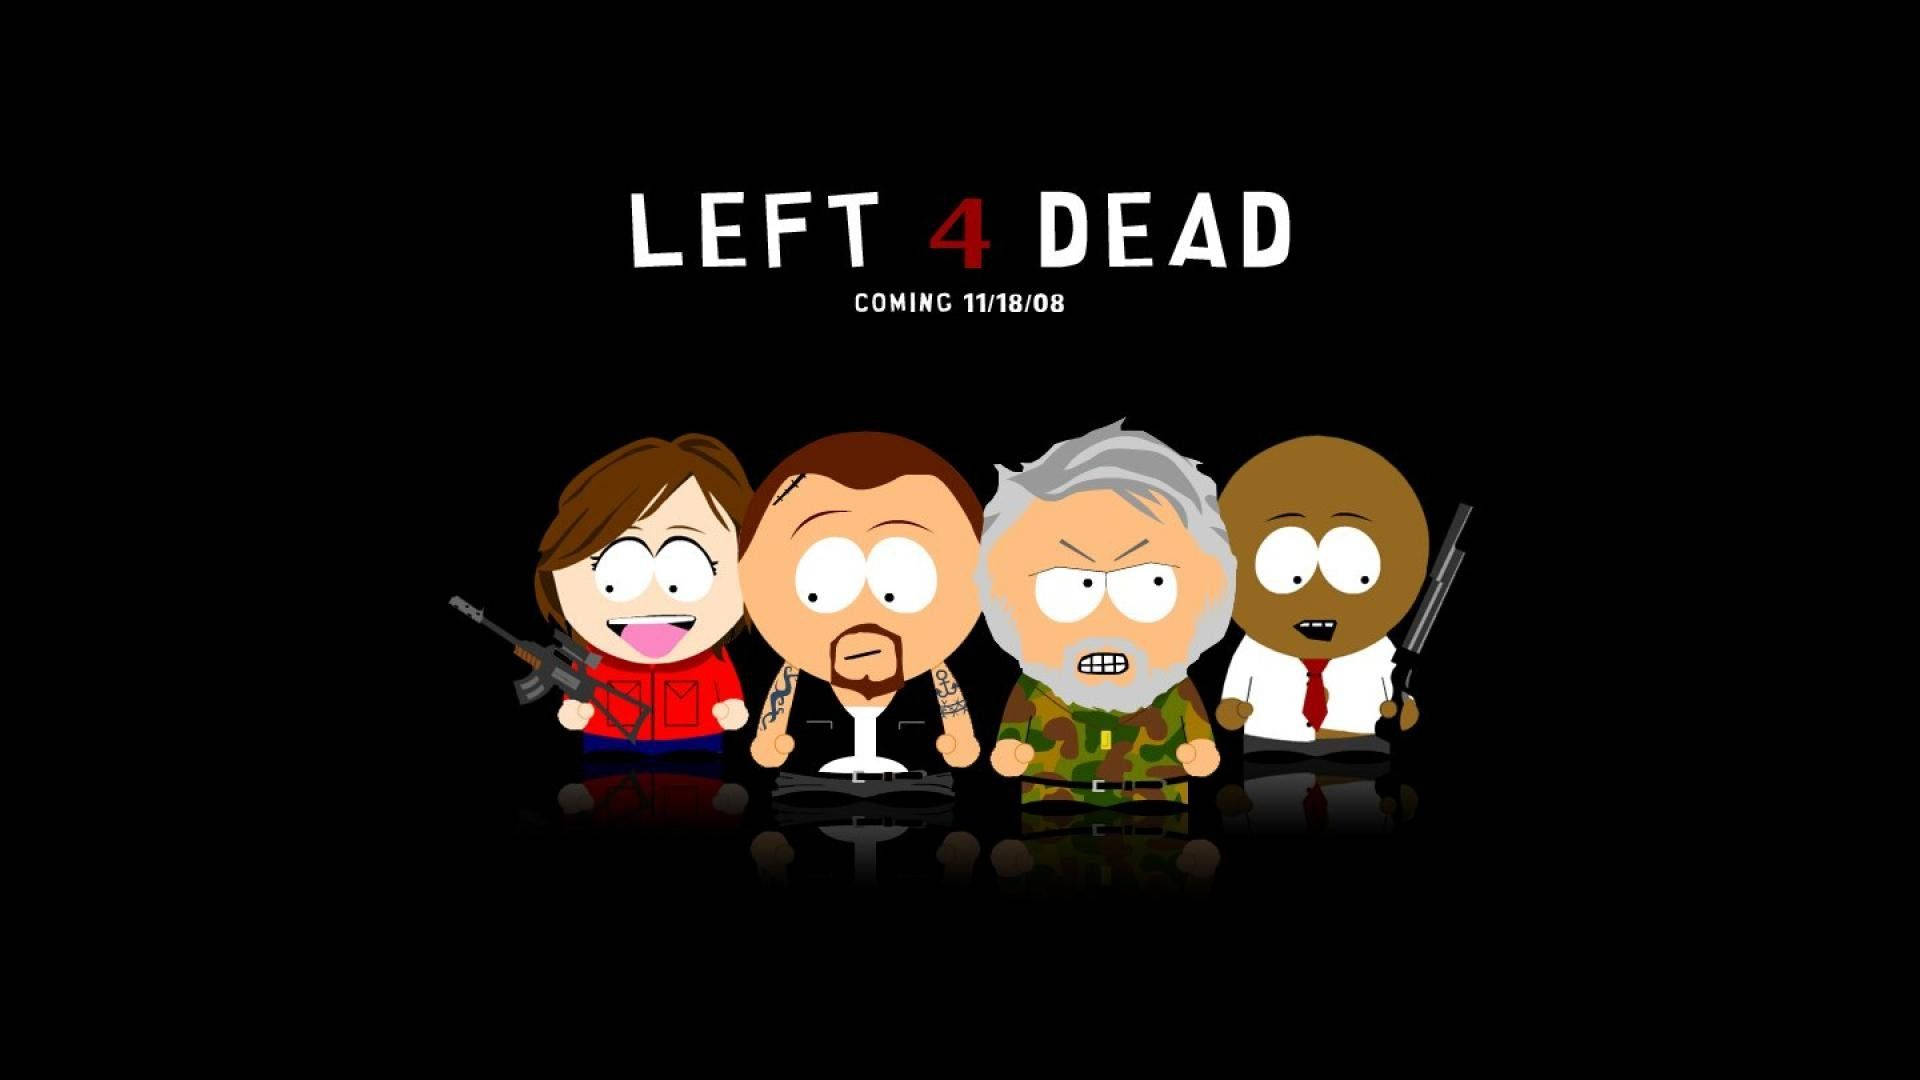 Left 4 Dead X South Park